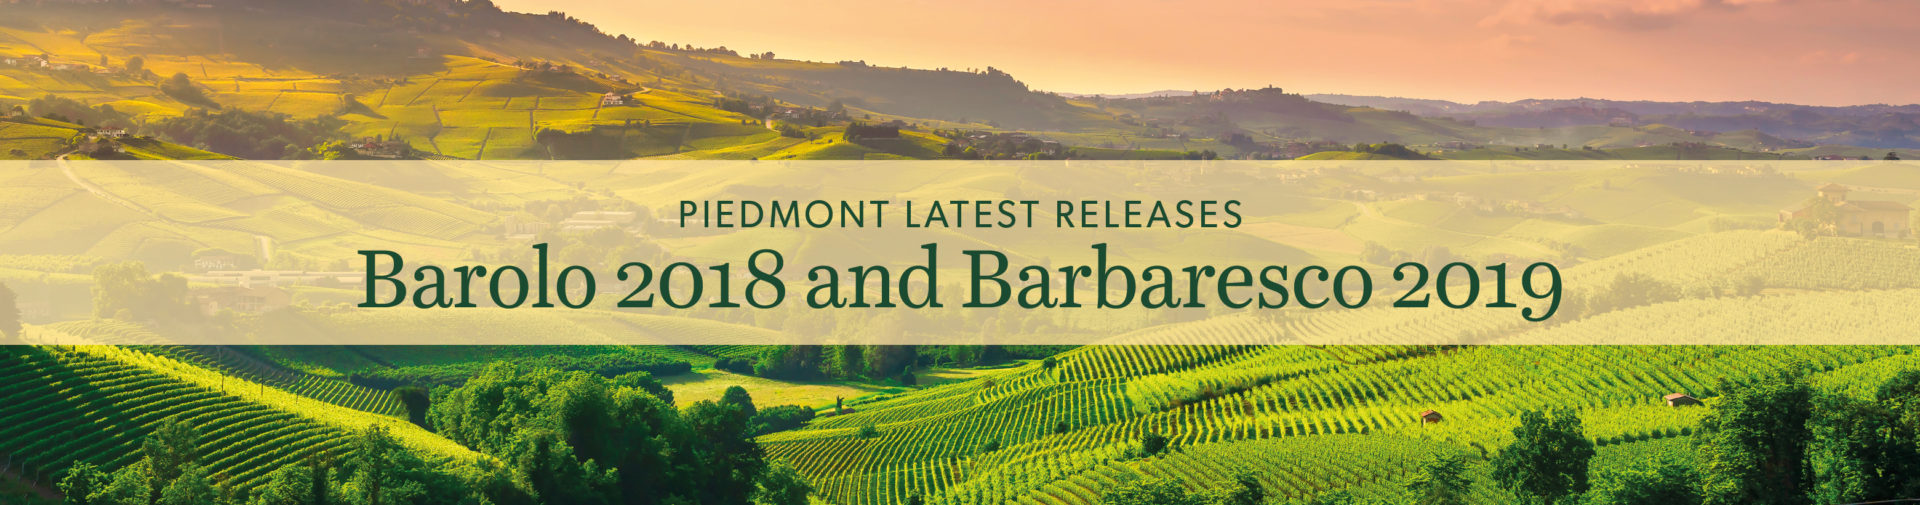 Piedmont latest releases